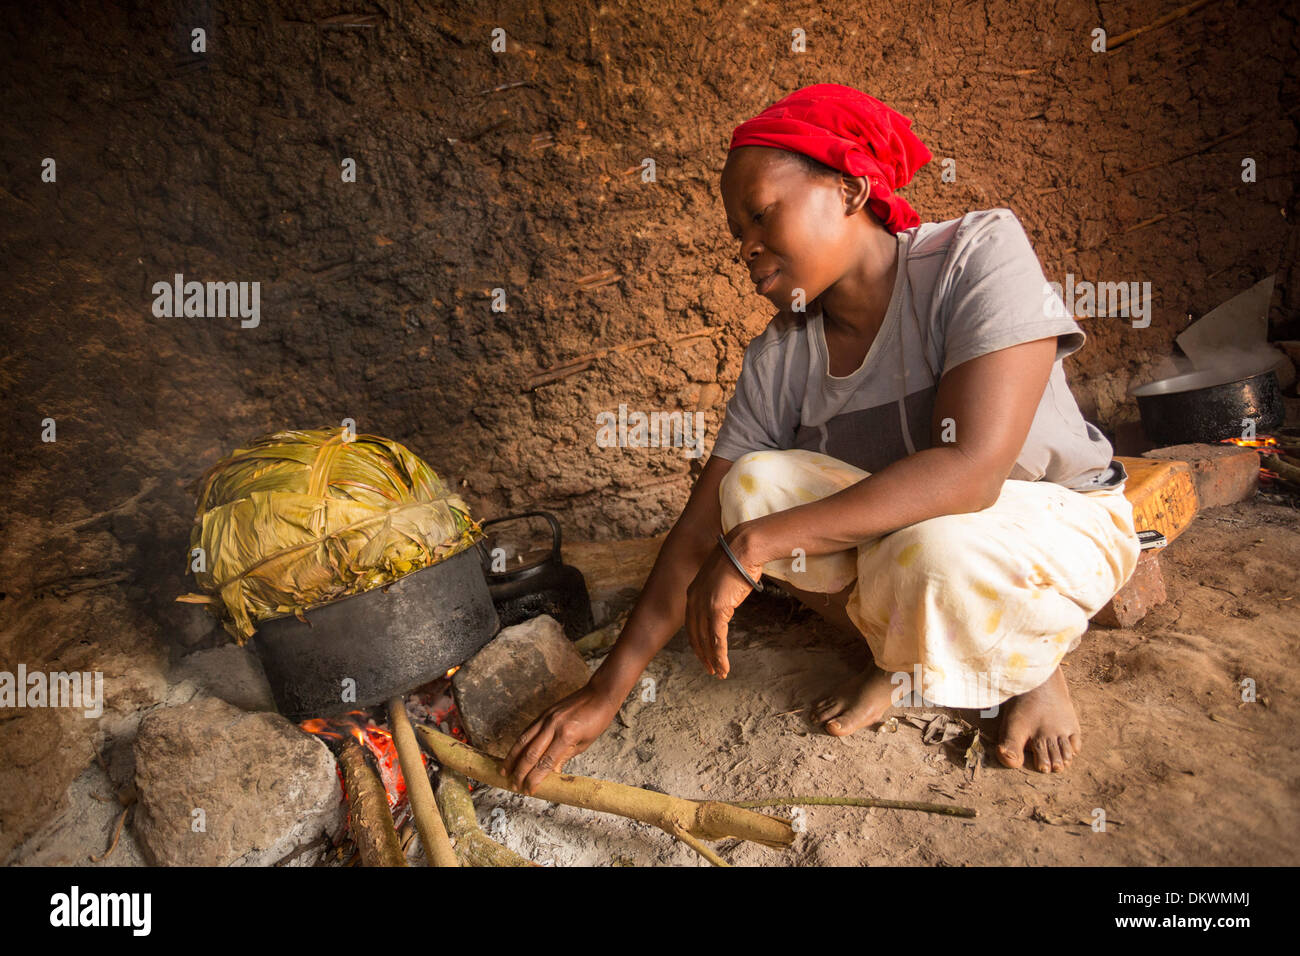 Femme cuisiner avec des feuilles de bananier en cuisine - Gombe, l'Ouganda, l'Afrique de l'Est. Banque D'Images